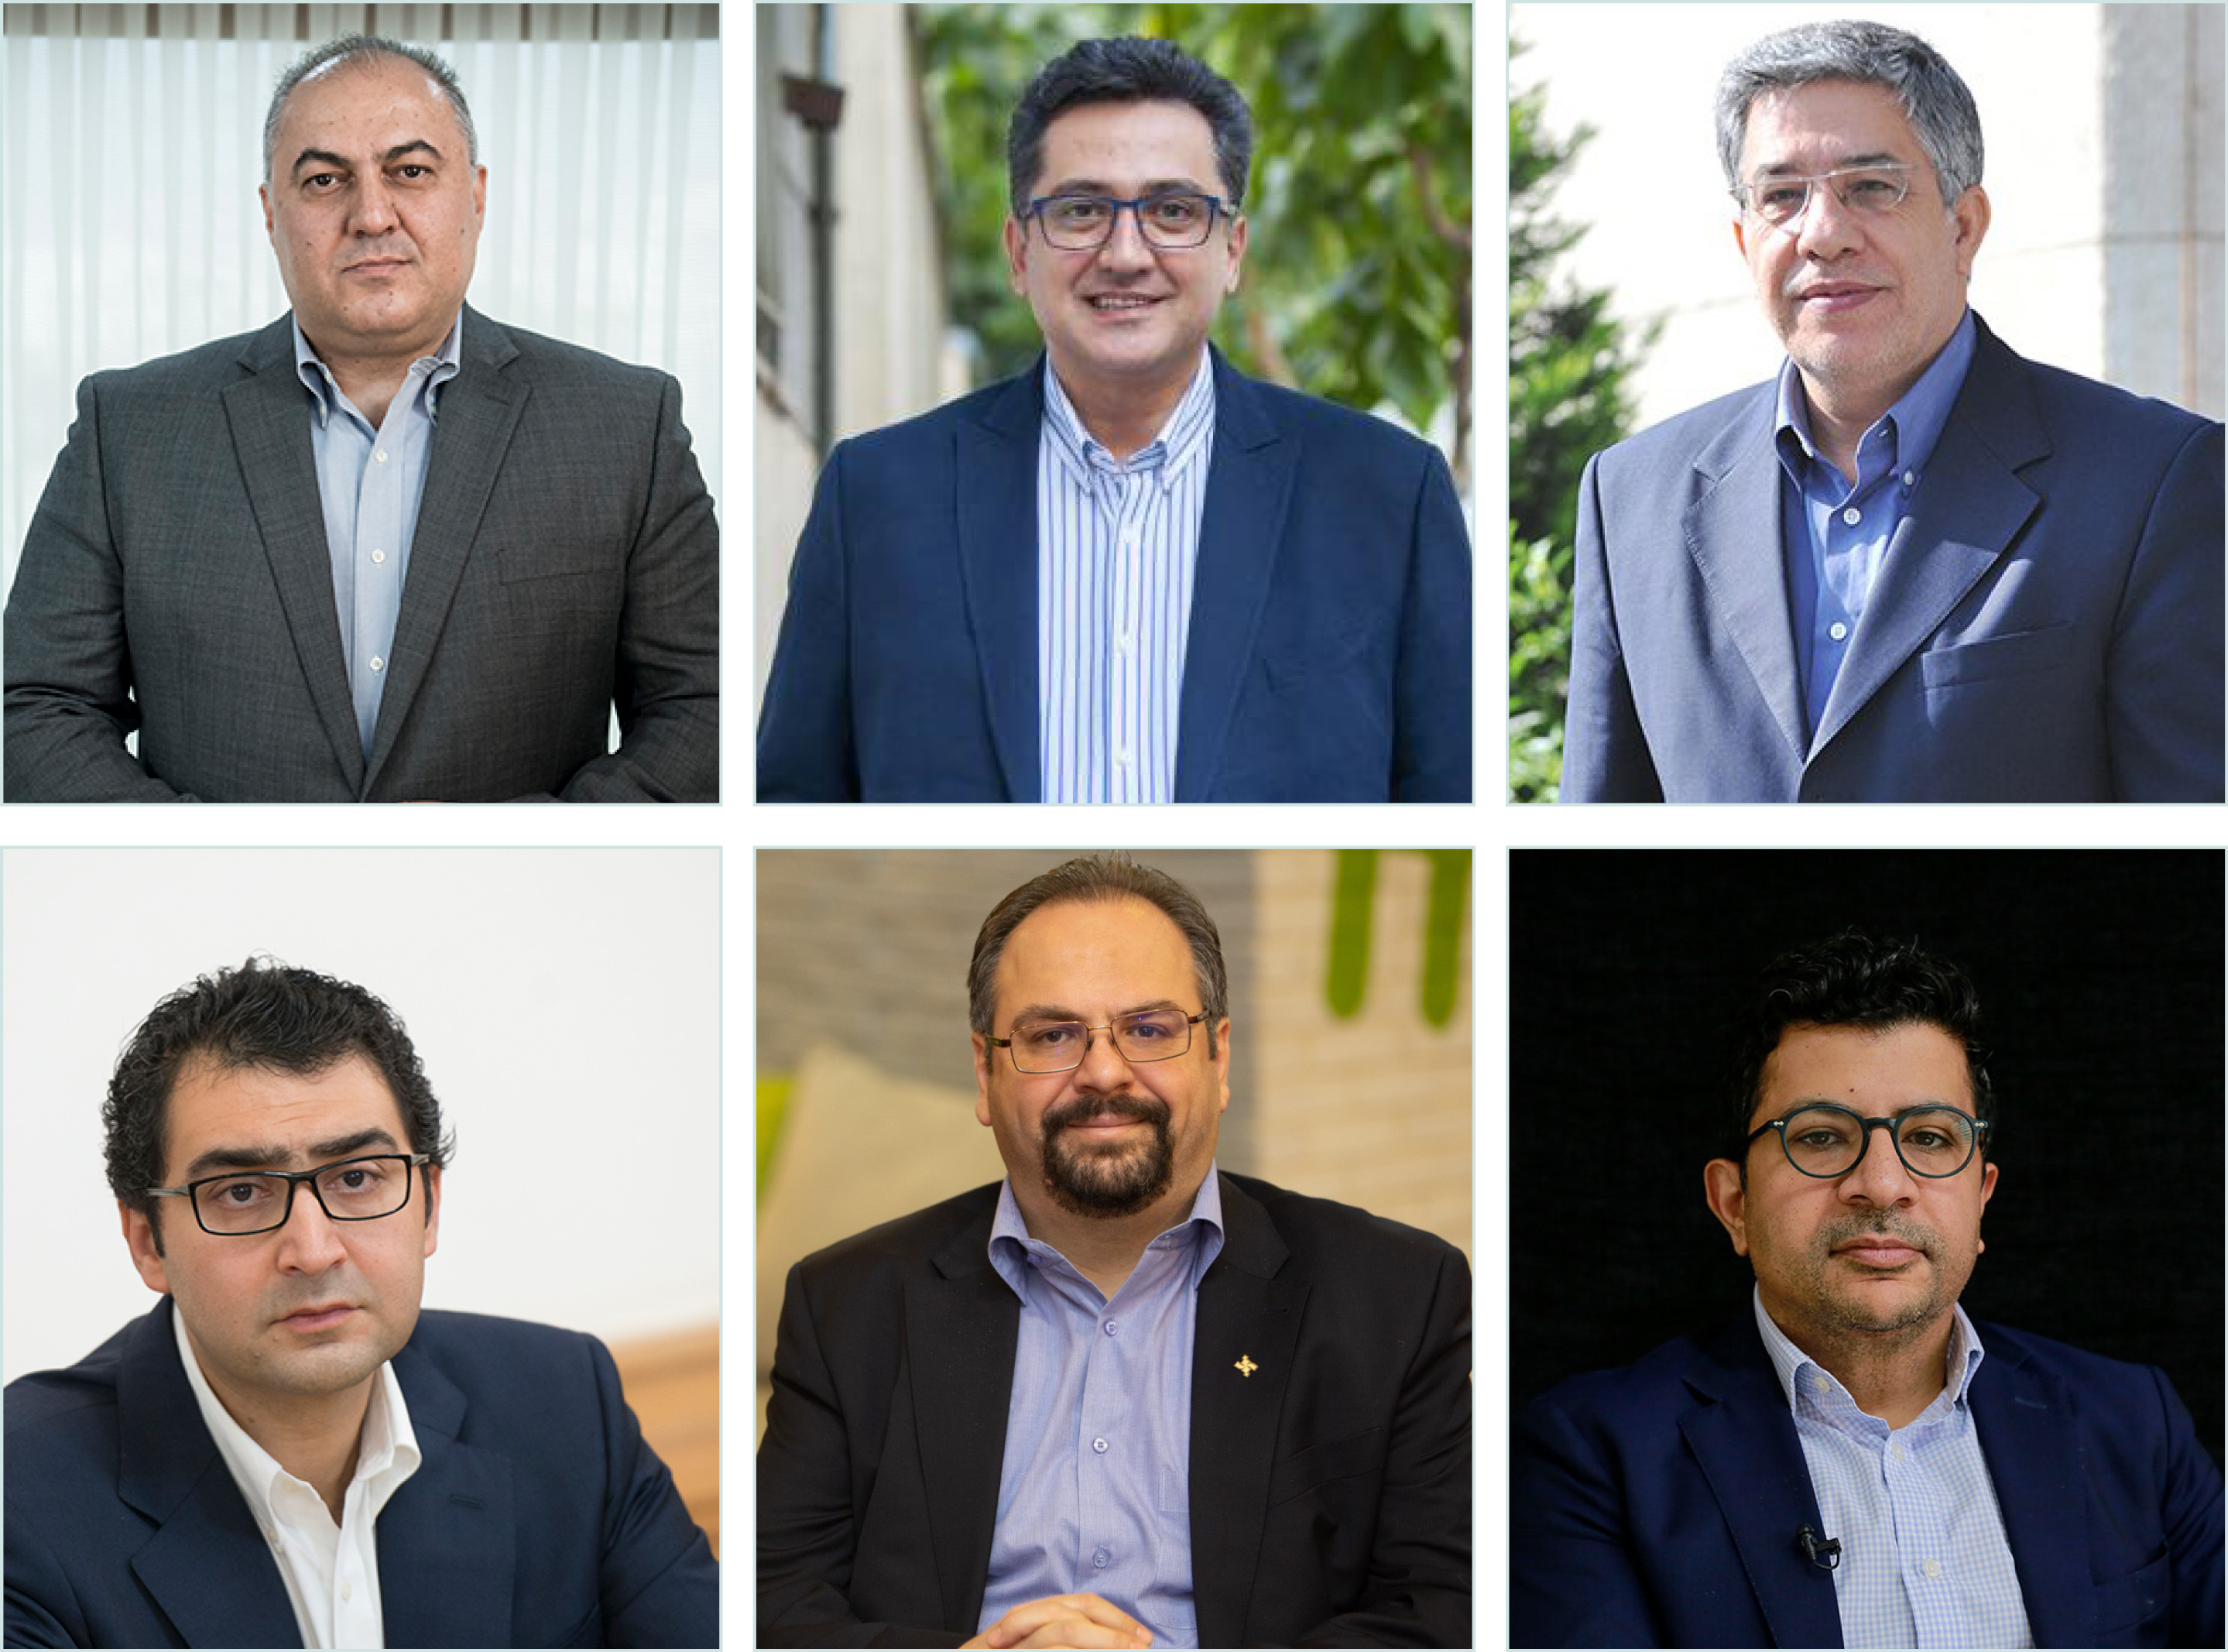 انتخاب 6 نفر از لیست مورد حمایت سازمان نصر تهران در انتخابات اتاق بازرگانی تهران اسامی